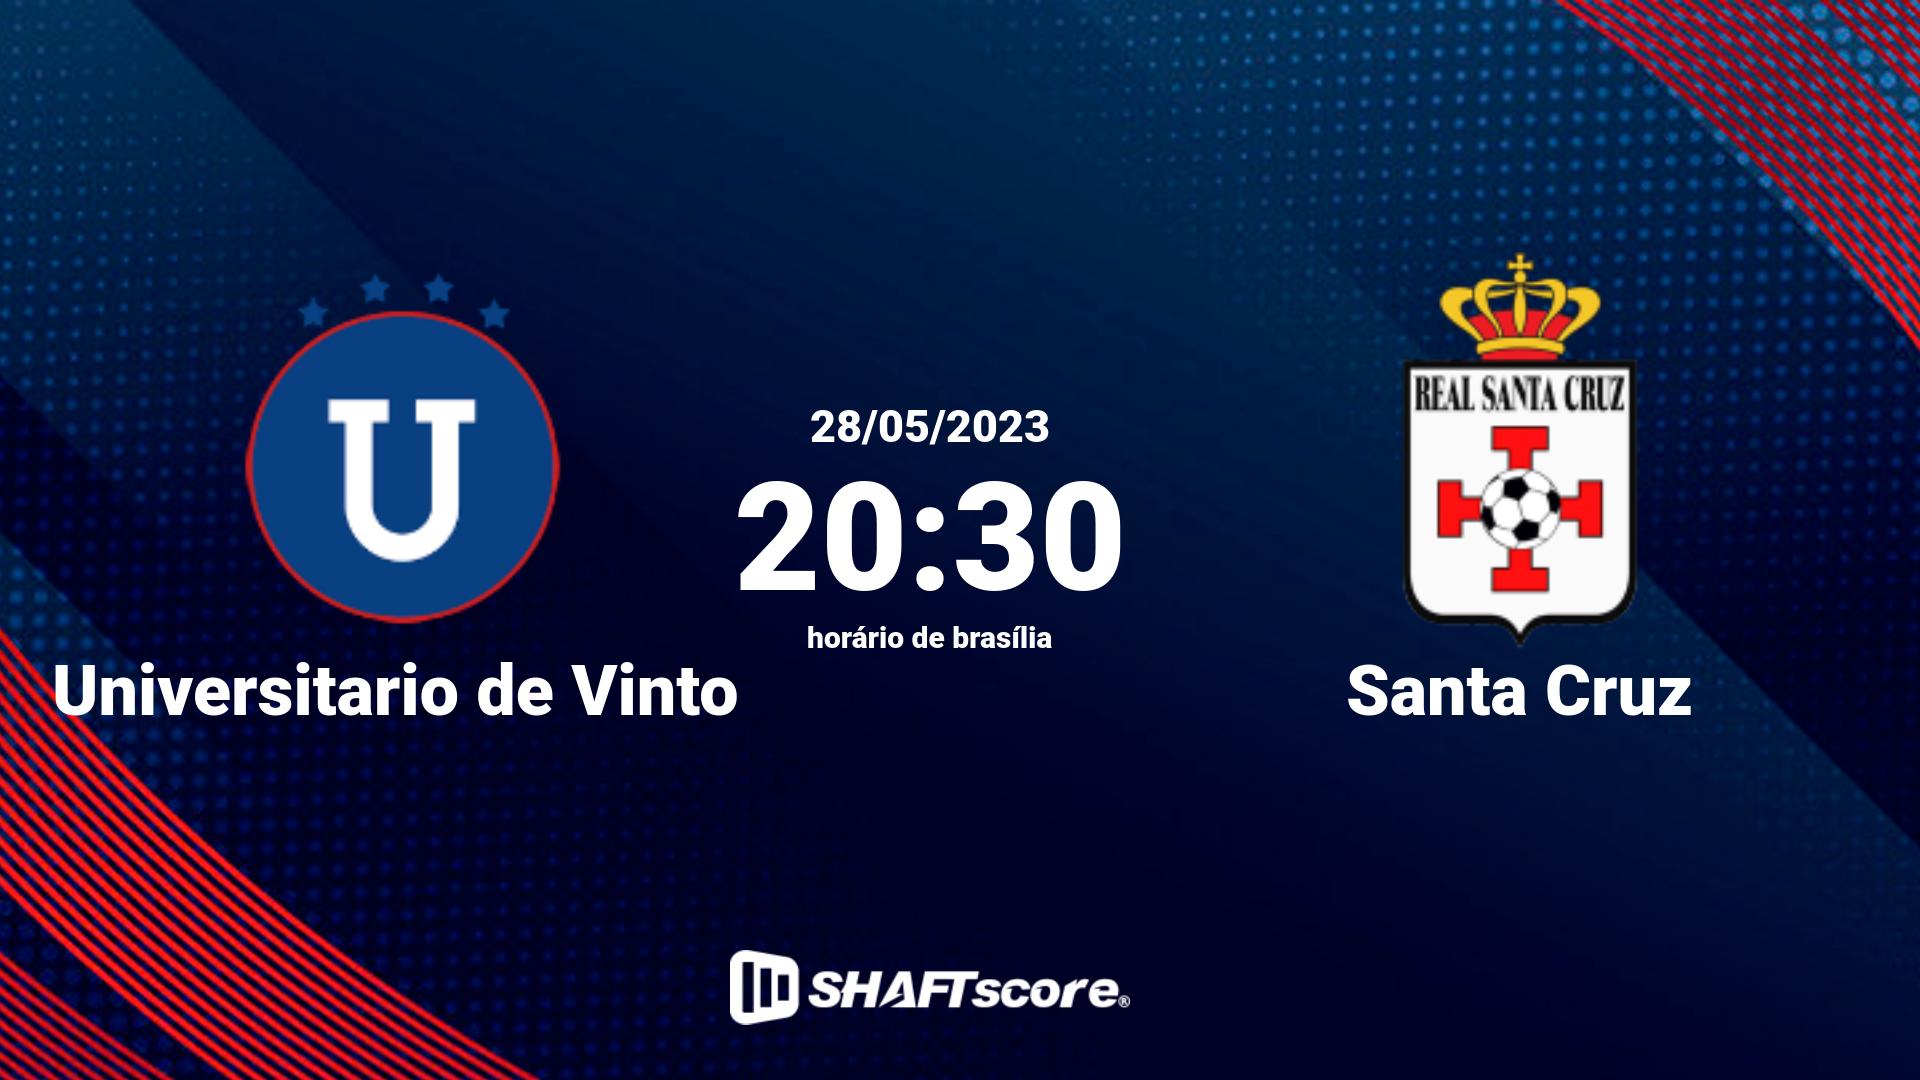 Estatísticas do jogo Universitario de Vinto vs Santa Cruz 28.05 20:30